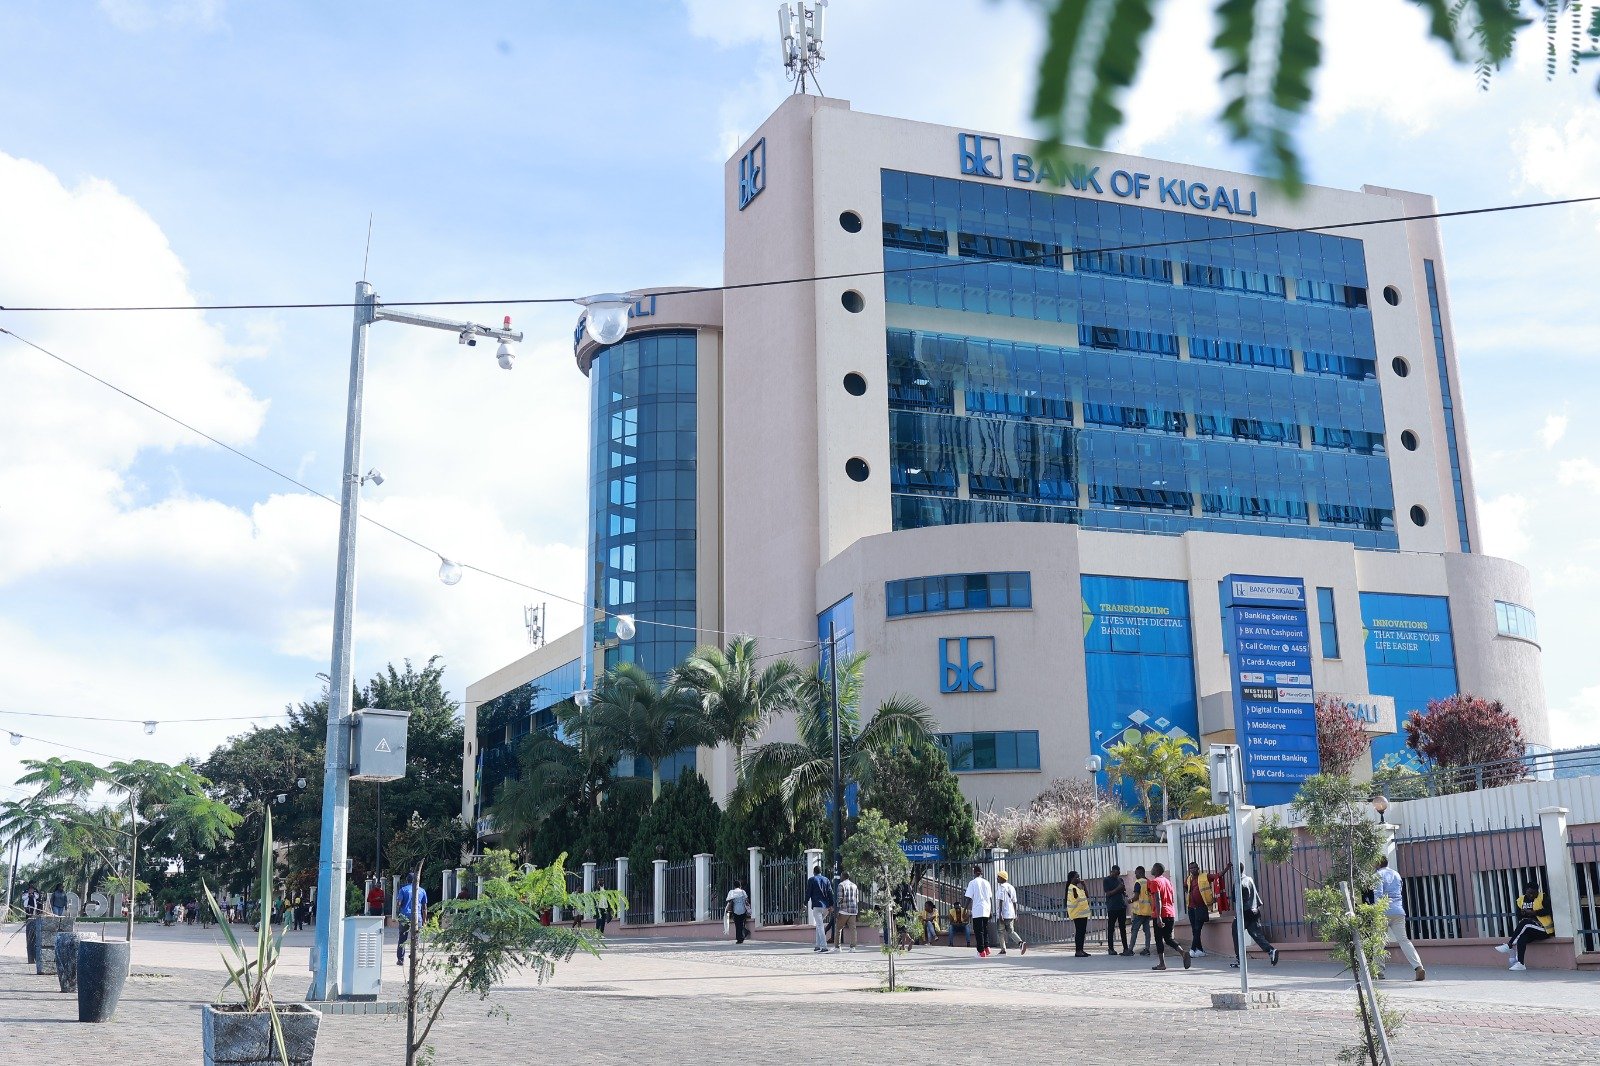  Banki ya Kigali yongeye guhabwa igihembo cy'indashyikirwa mu Rwanda